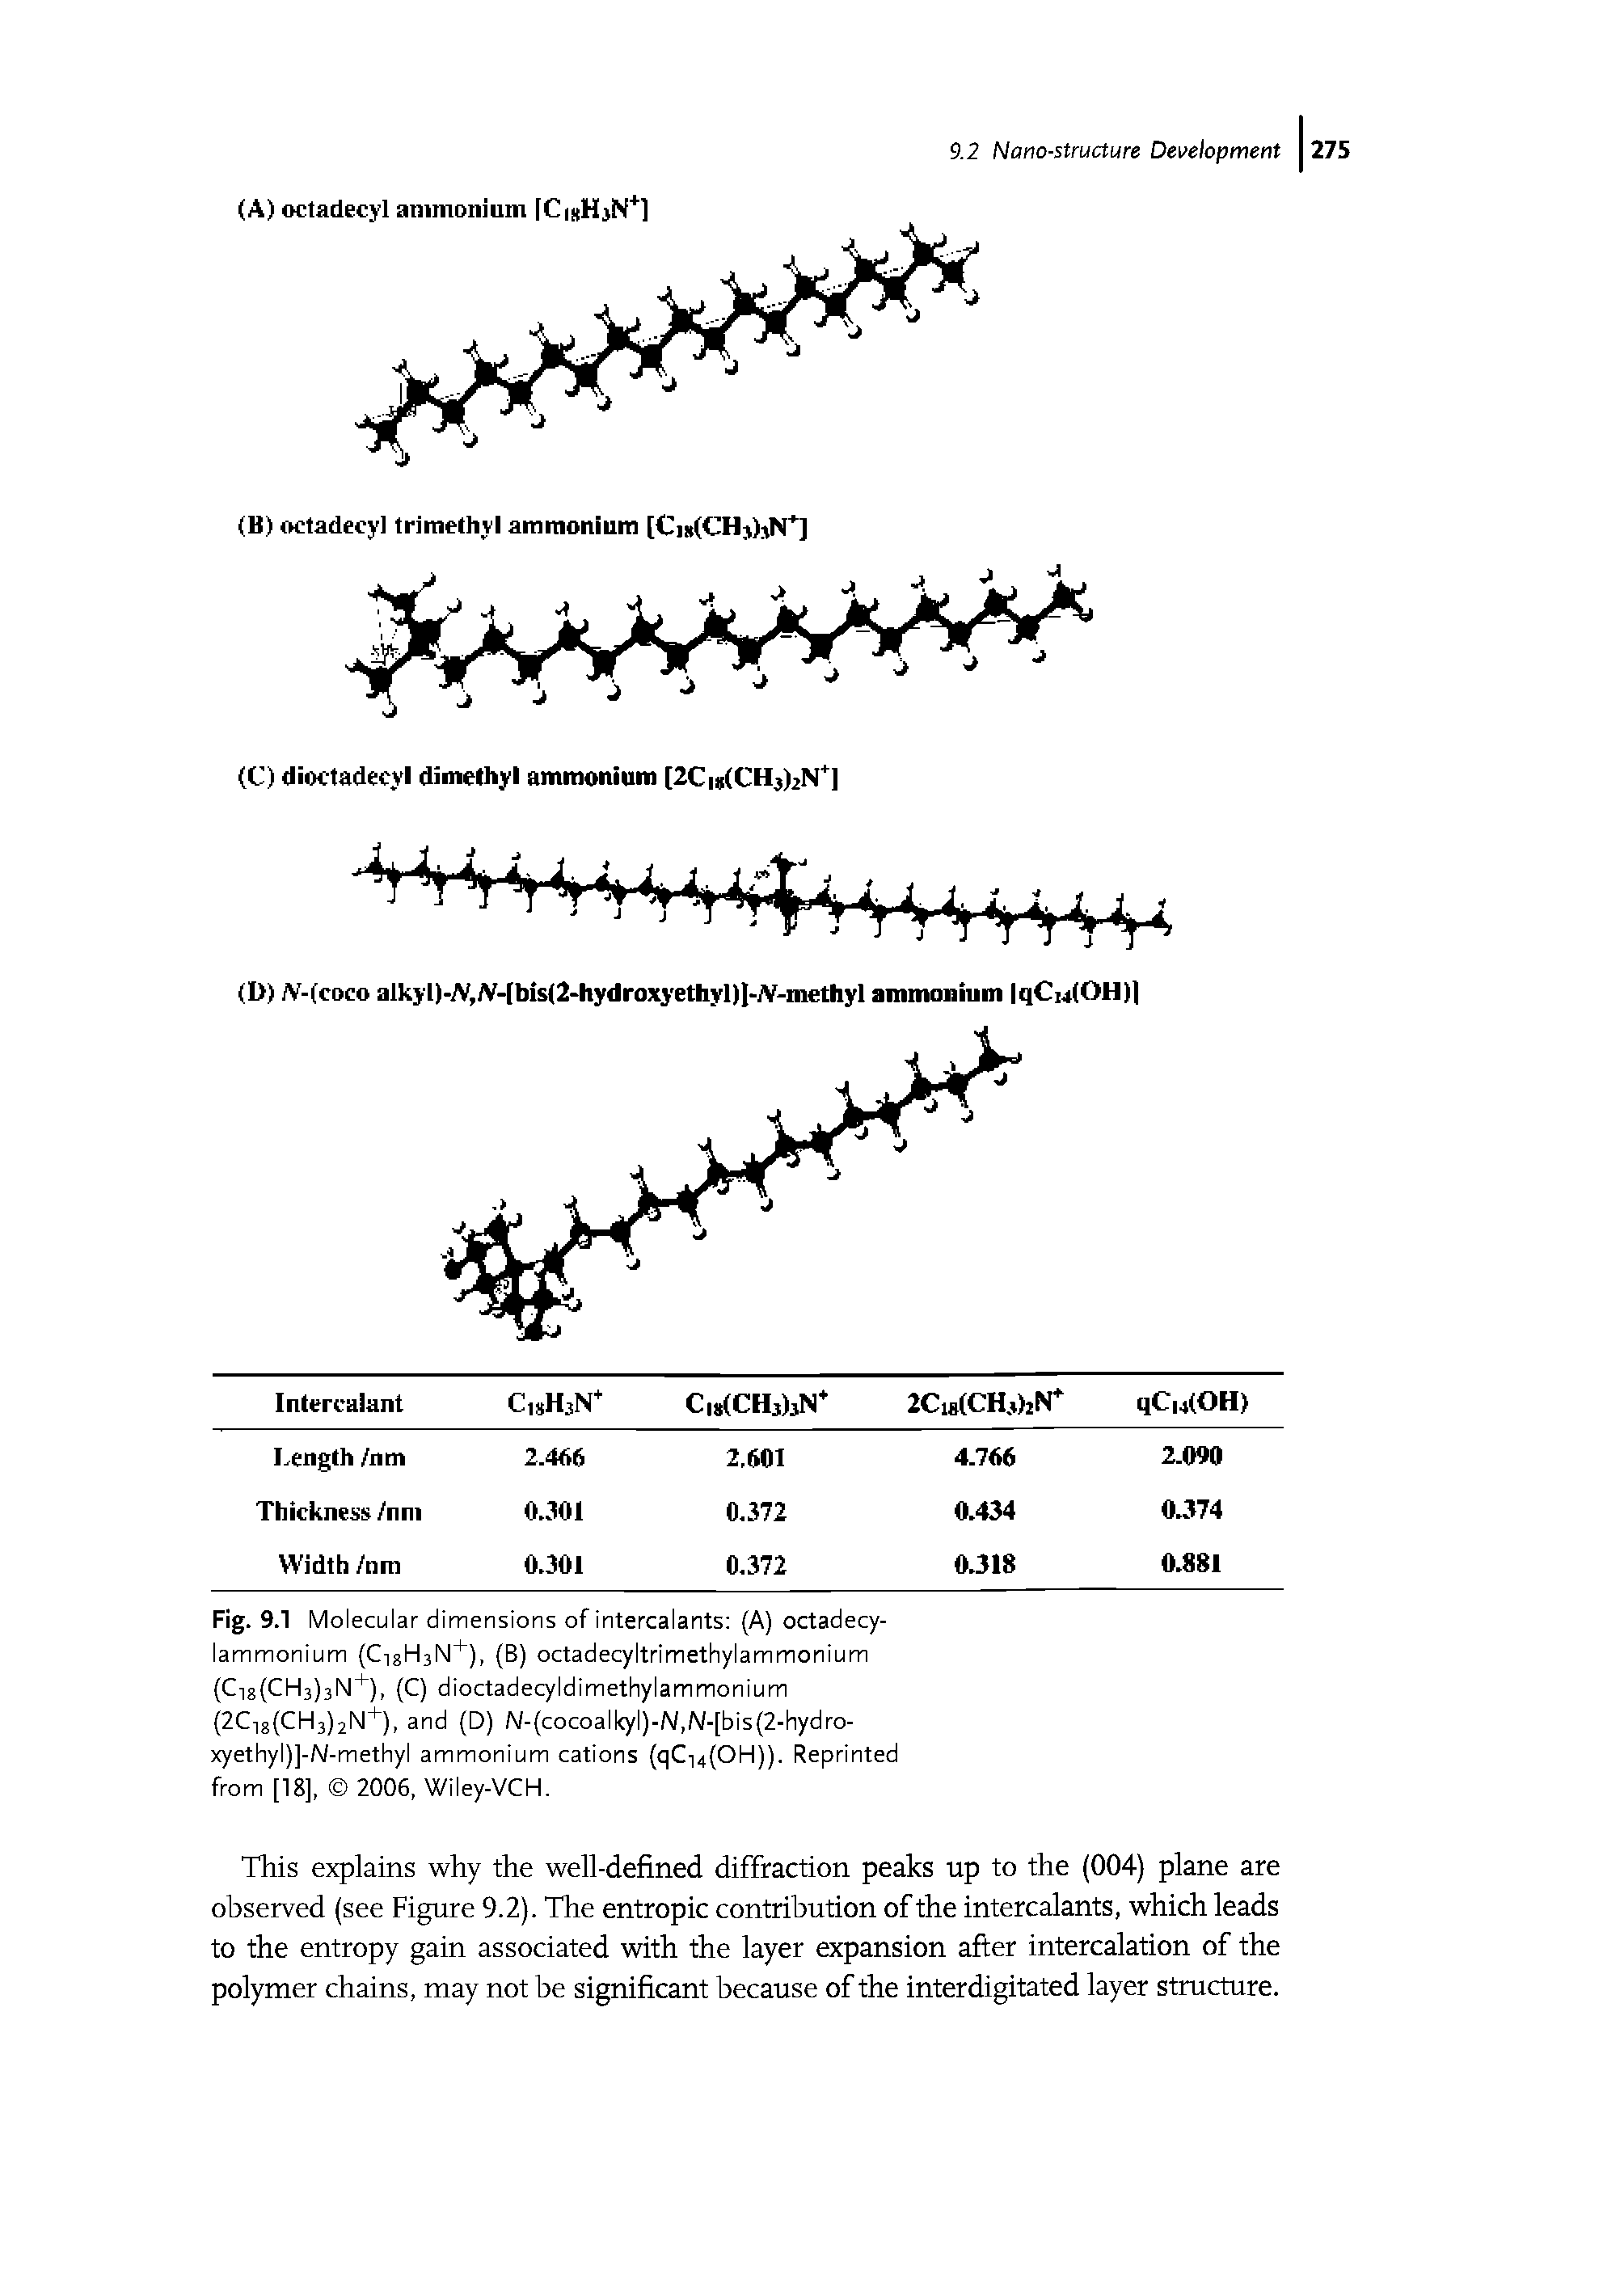 Fig. 9.1 Molecular dimensions of intercalants (A) octadecy-lammonium (C18H3N+), (B) octadecyltrimethylammonium (C18(CH3)3N+), (C) dioctadecyldimethylammonium (2C18(CH3)2N+), and (D) N-(cocoalkyl)-N,N-[bis(2-hydro-xyethyl)]-N-methyl ammonium cations (qC14(OH)). Reprinted from [18], 2006, Wiley-VCH.